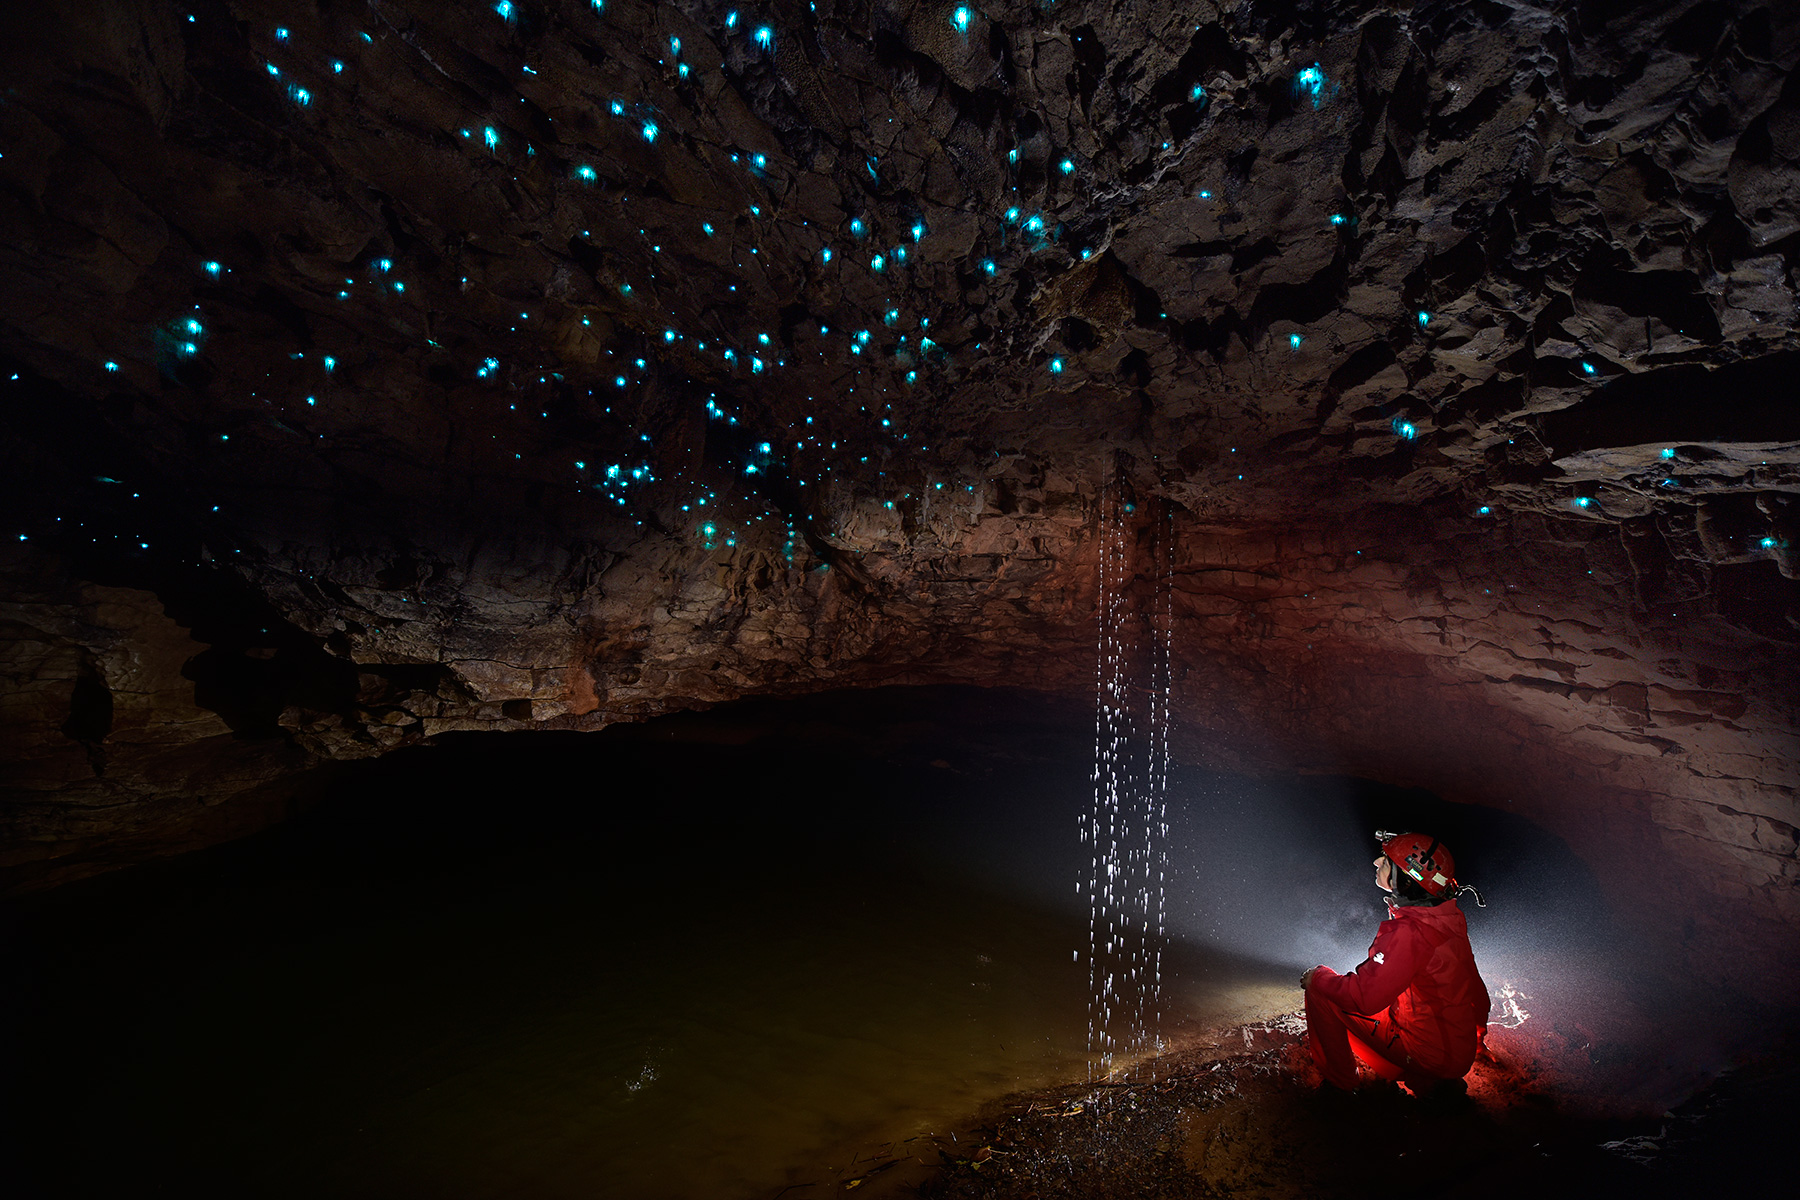 Spellbound cave (Mangawhitikau glowworm cave) - Plafond couvert de "Glowworms" (vers luisants) au dessus d'une rivière avec spéléo premier plan